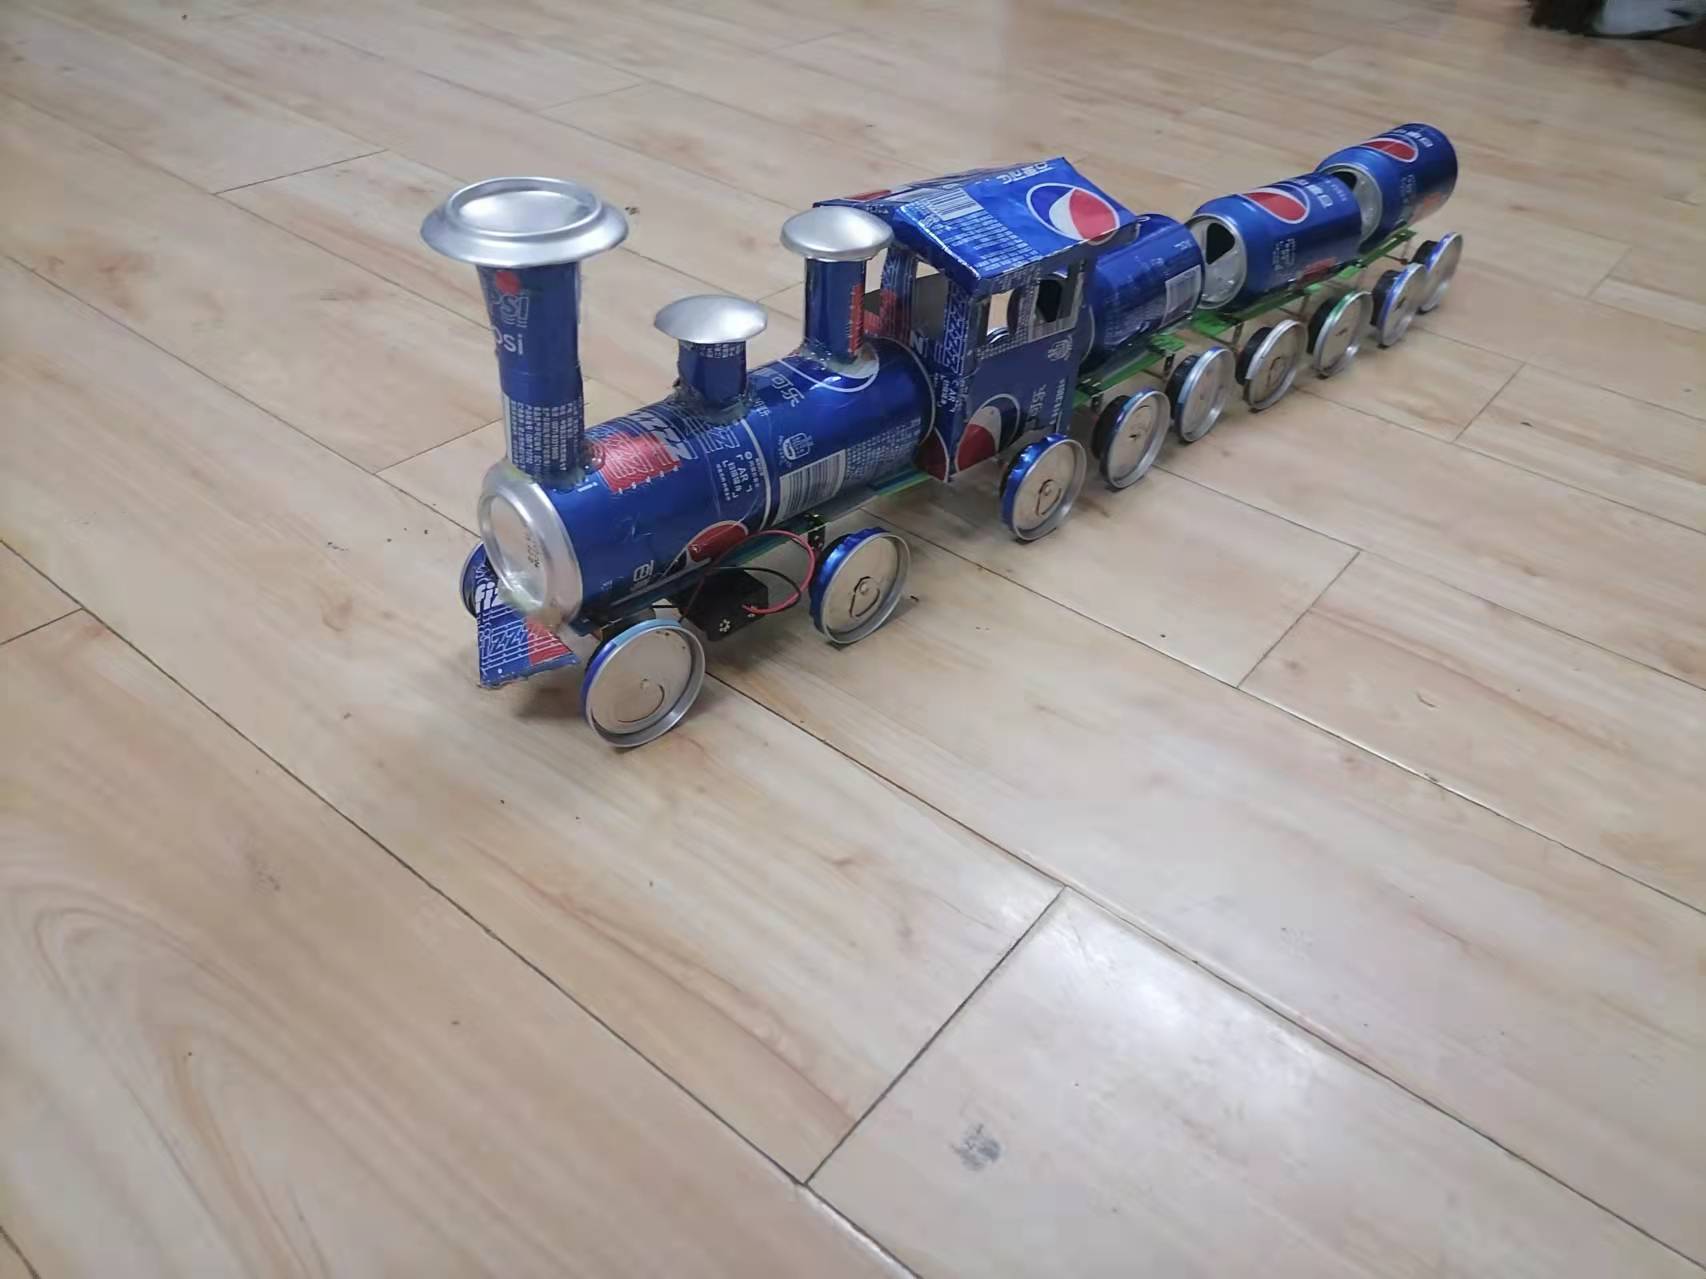 易拉罐火车学生学生科科技手工作业环保制作发明创造教学仪器